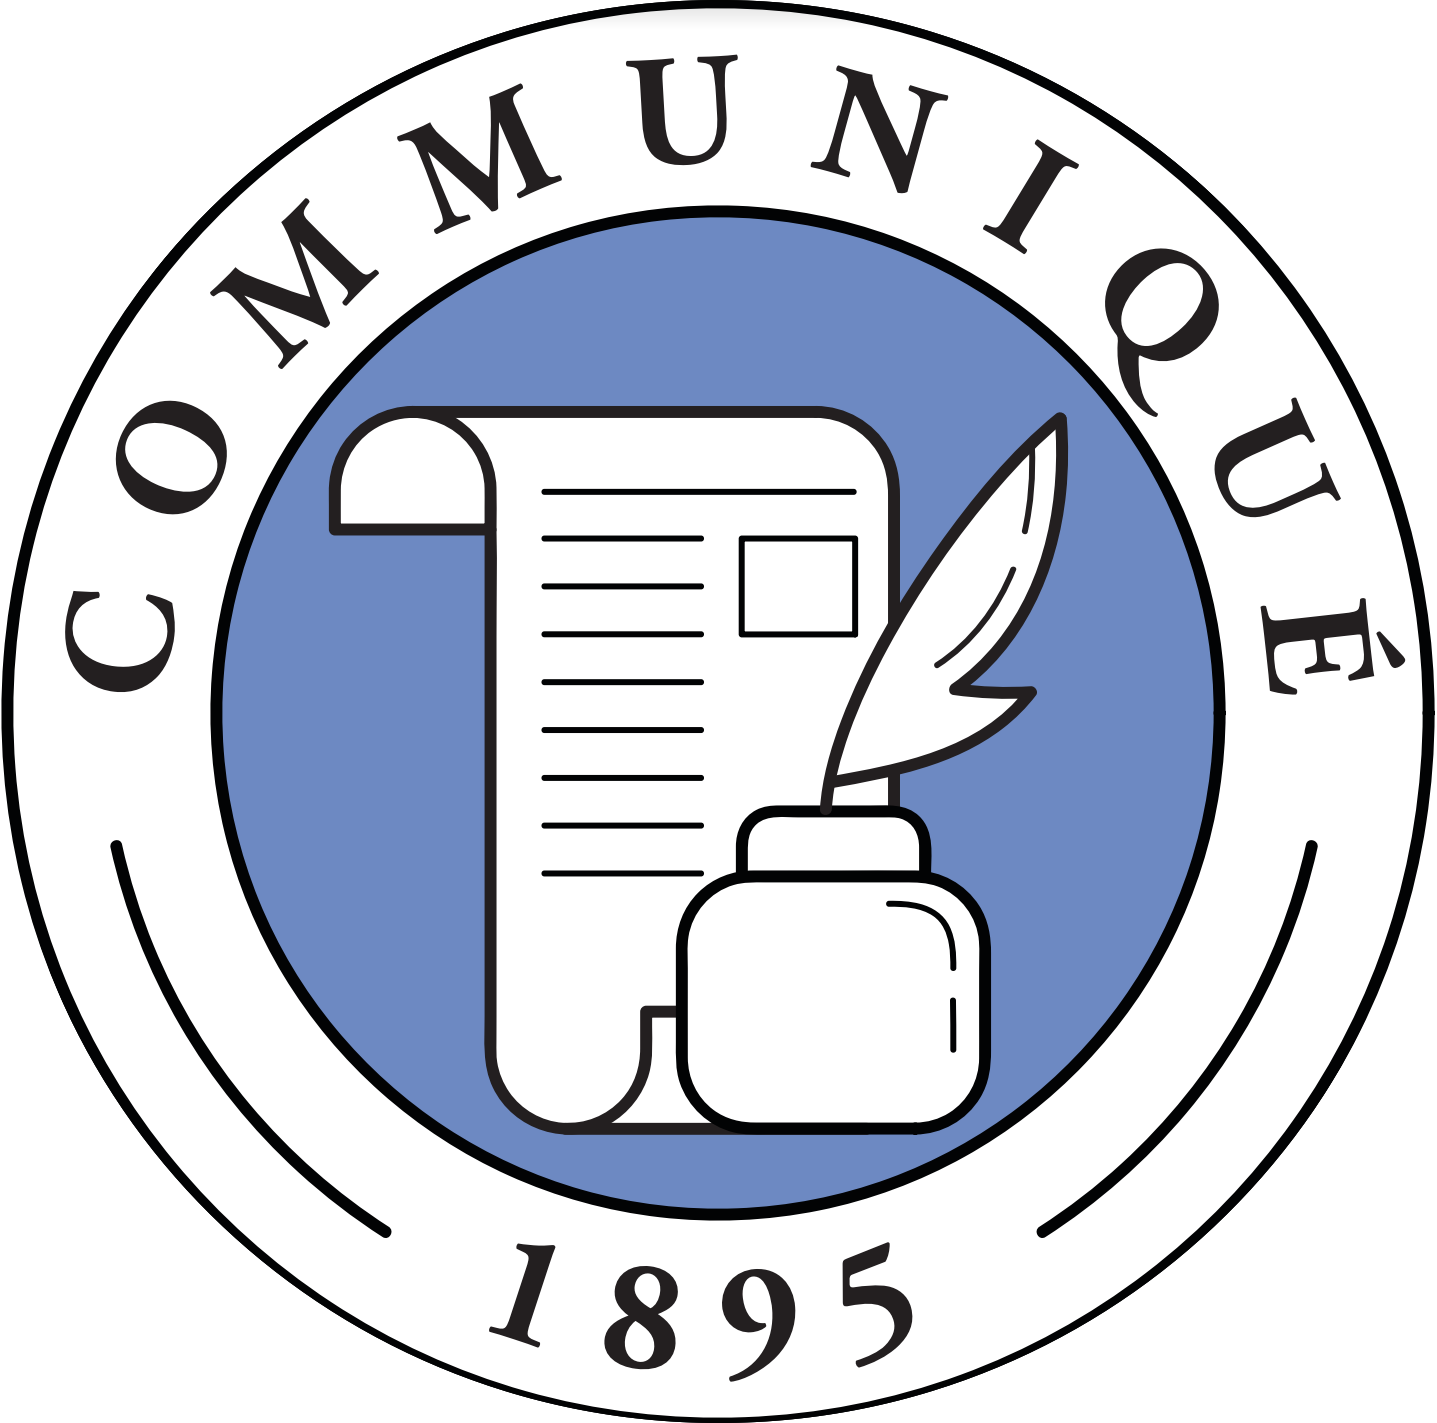 Communique Logo